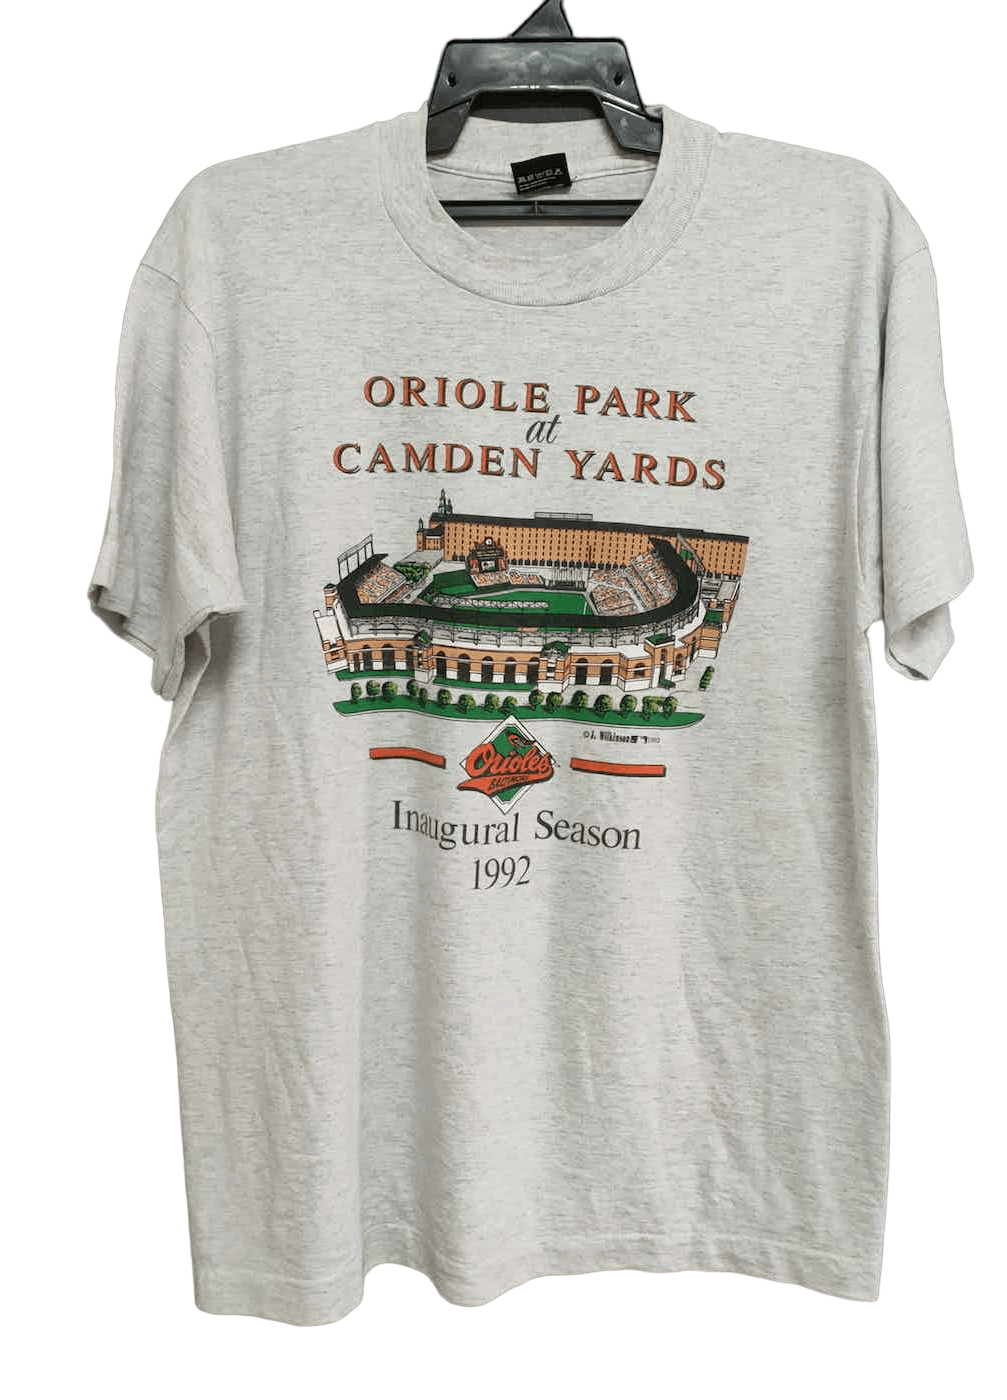 Oriole Park at Camden Yards 1992 Inaugural Season T-Shirt - 2XL